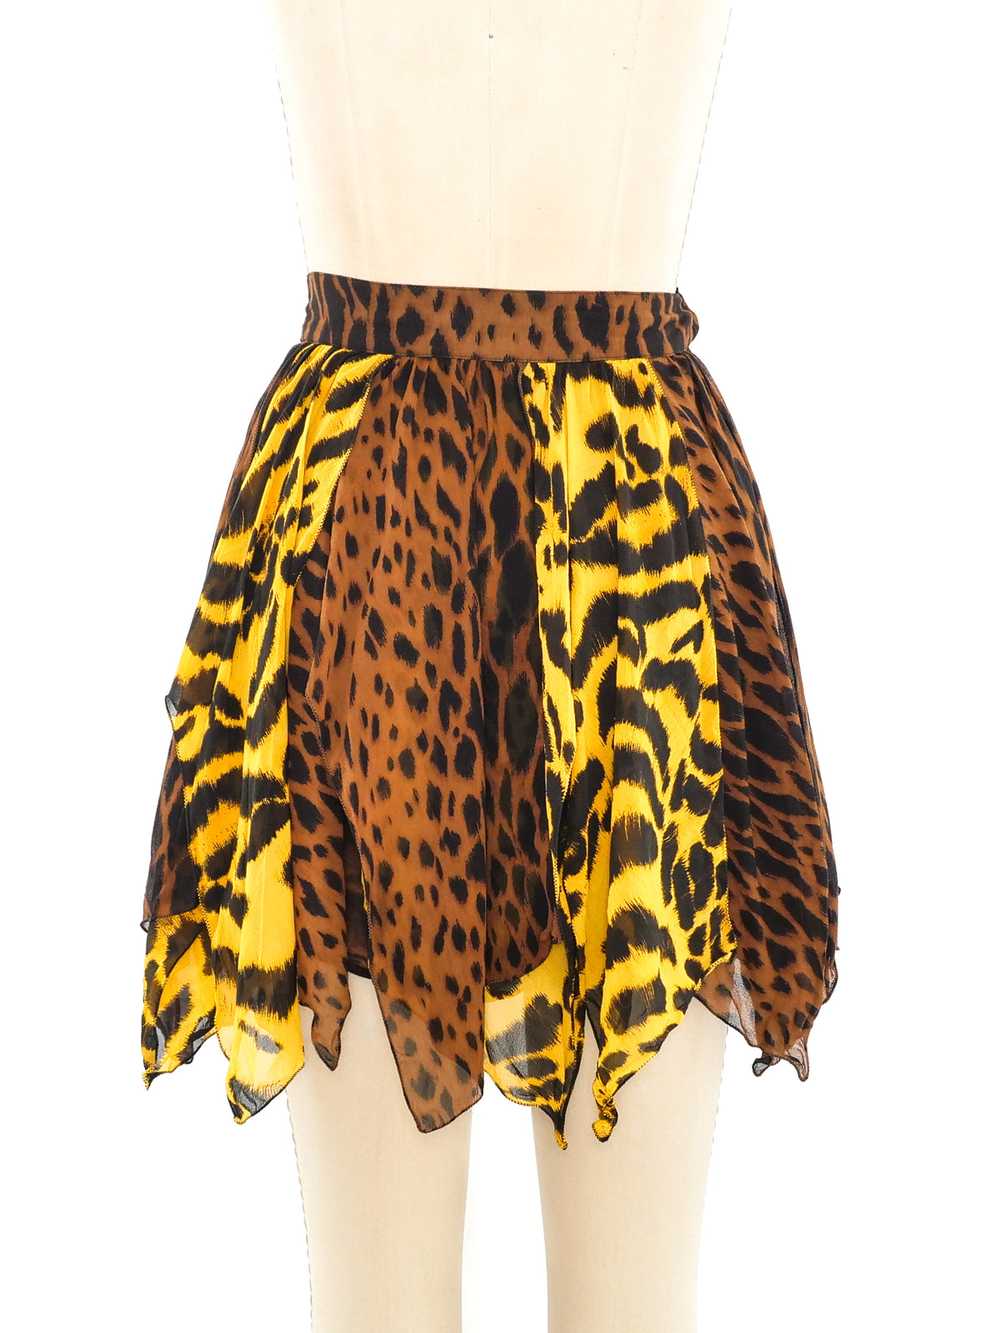 Gianni Versace Animal Printed Silk Skirt - image 6